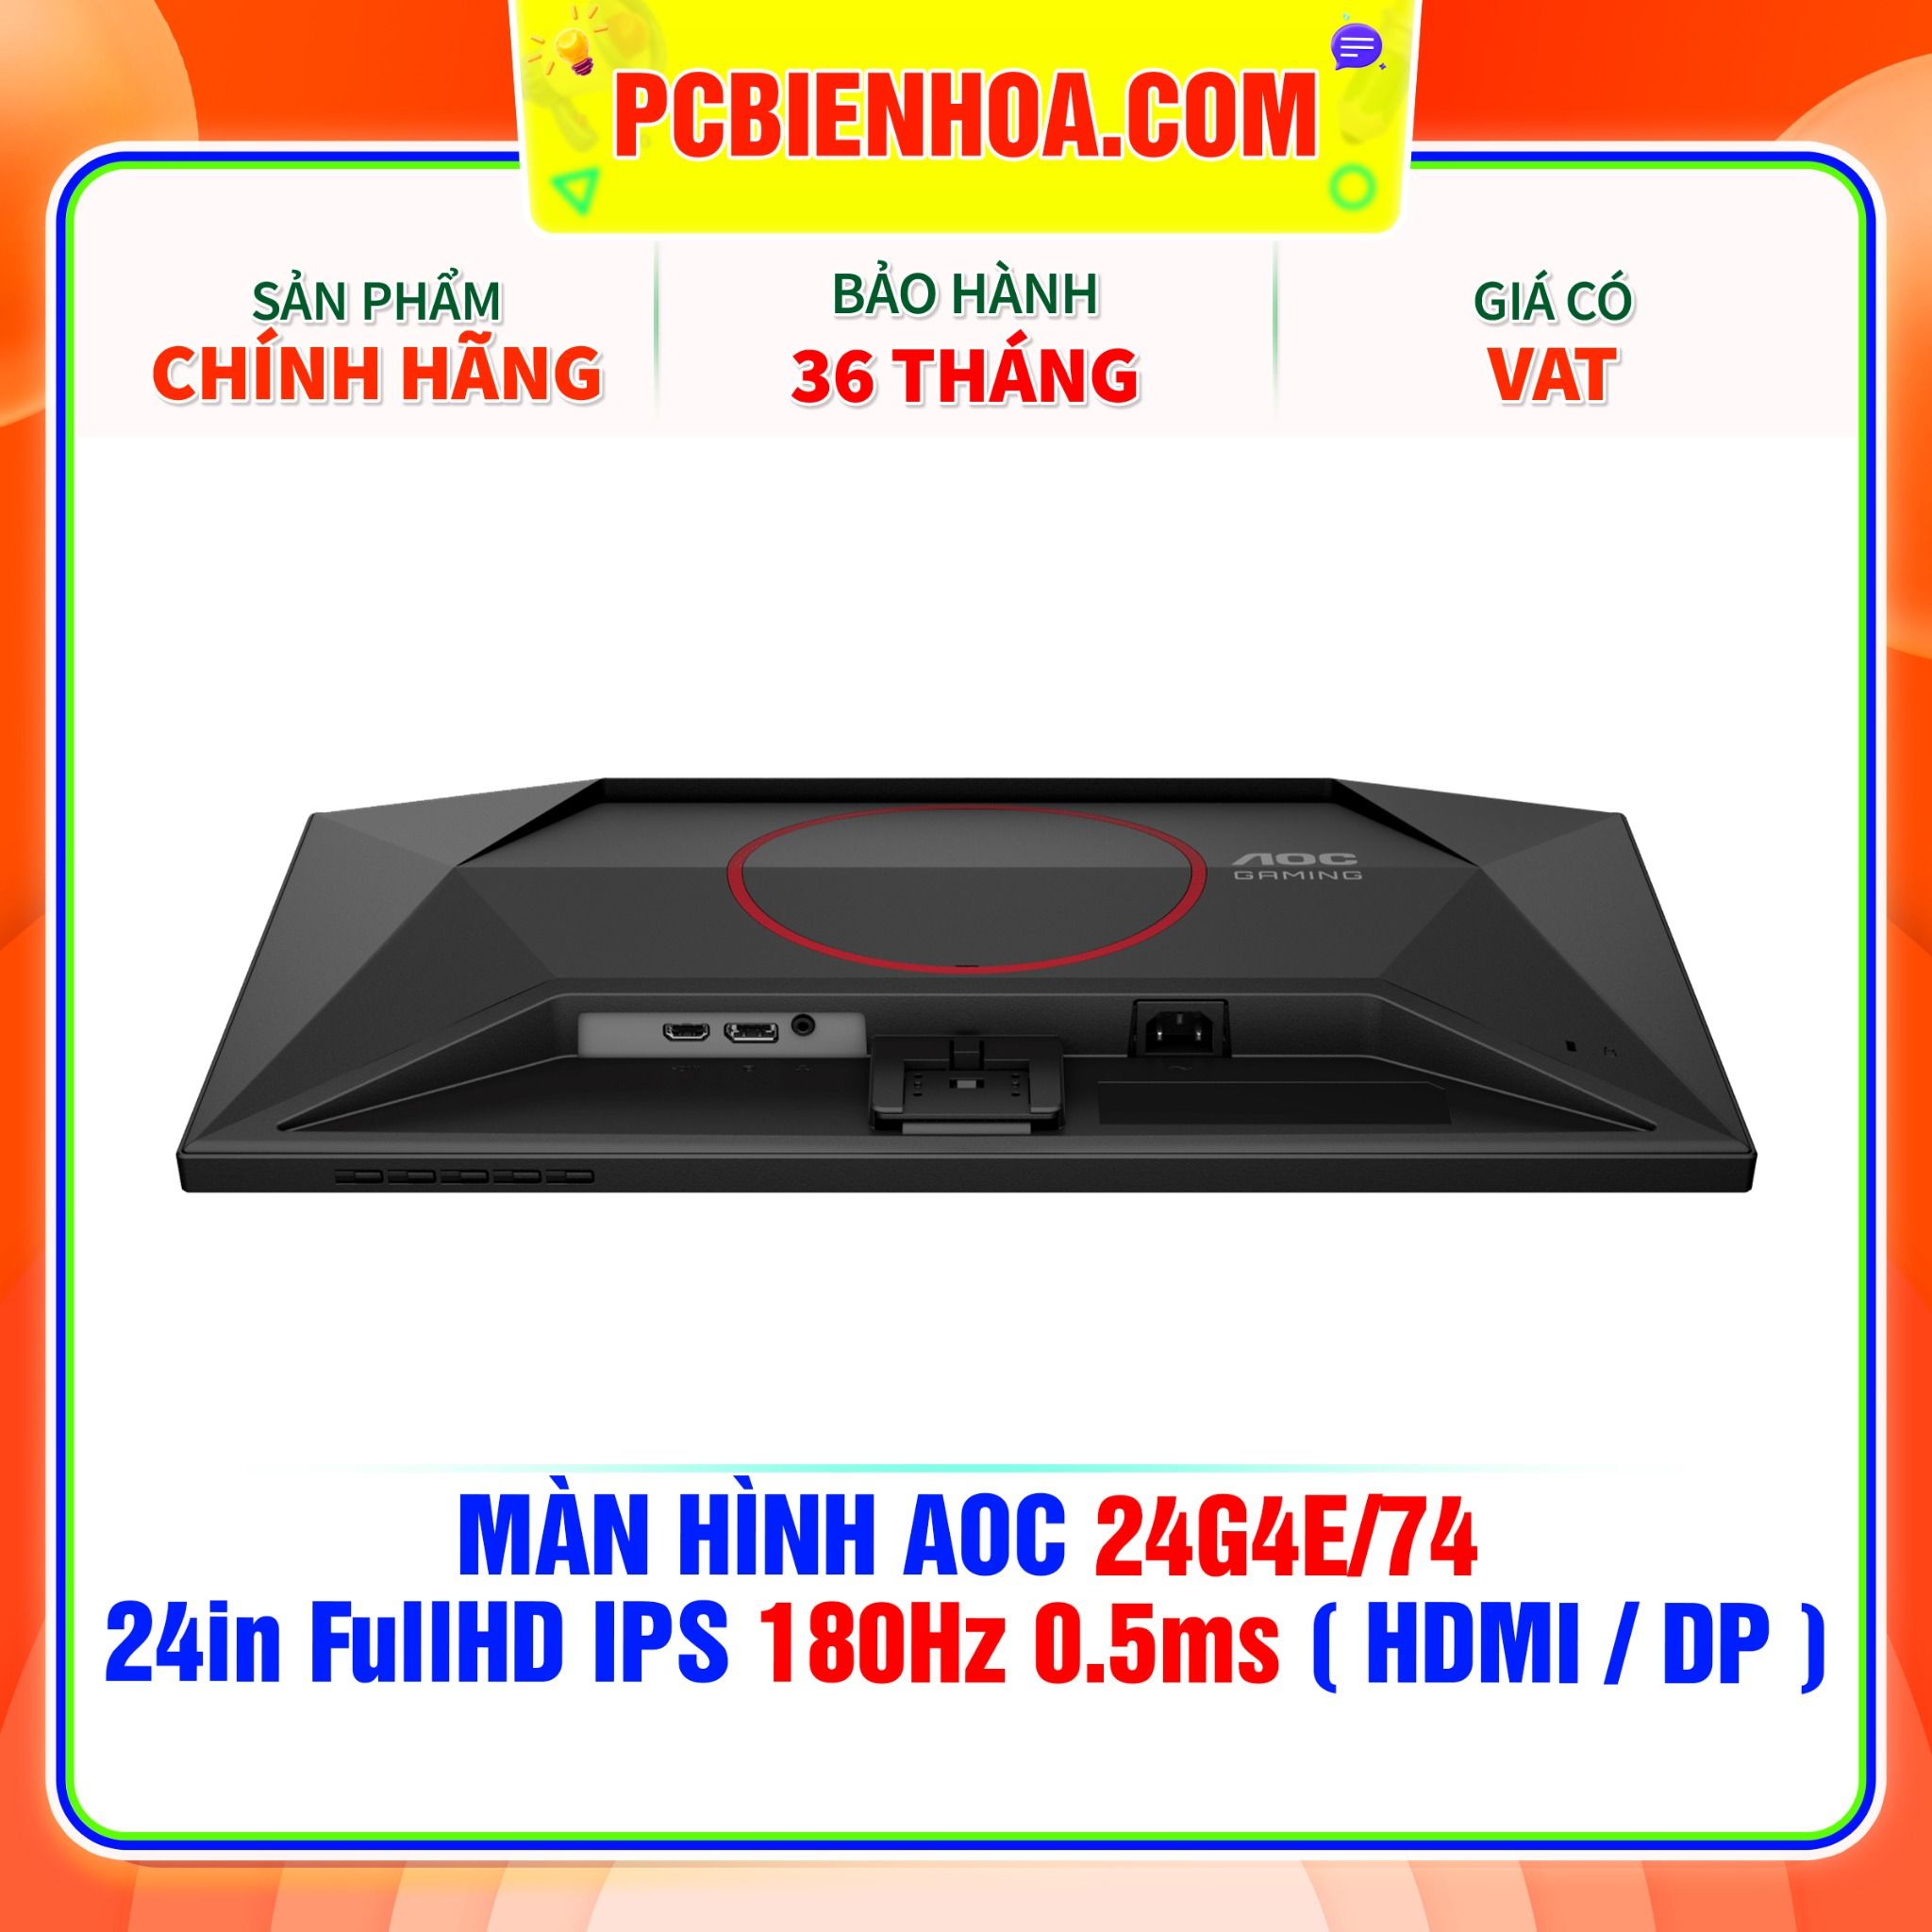  MÀN HÌNH AOC 24G4E/74 - 24in FullHD IPS 180Hz 0.5ms ( HDMI / DP ) 